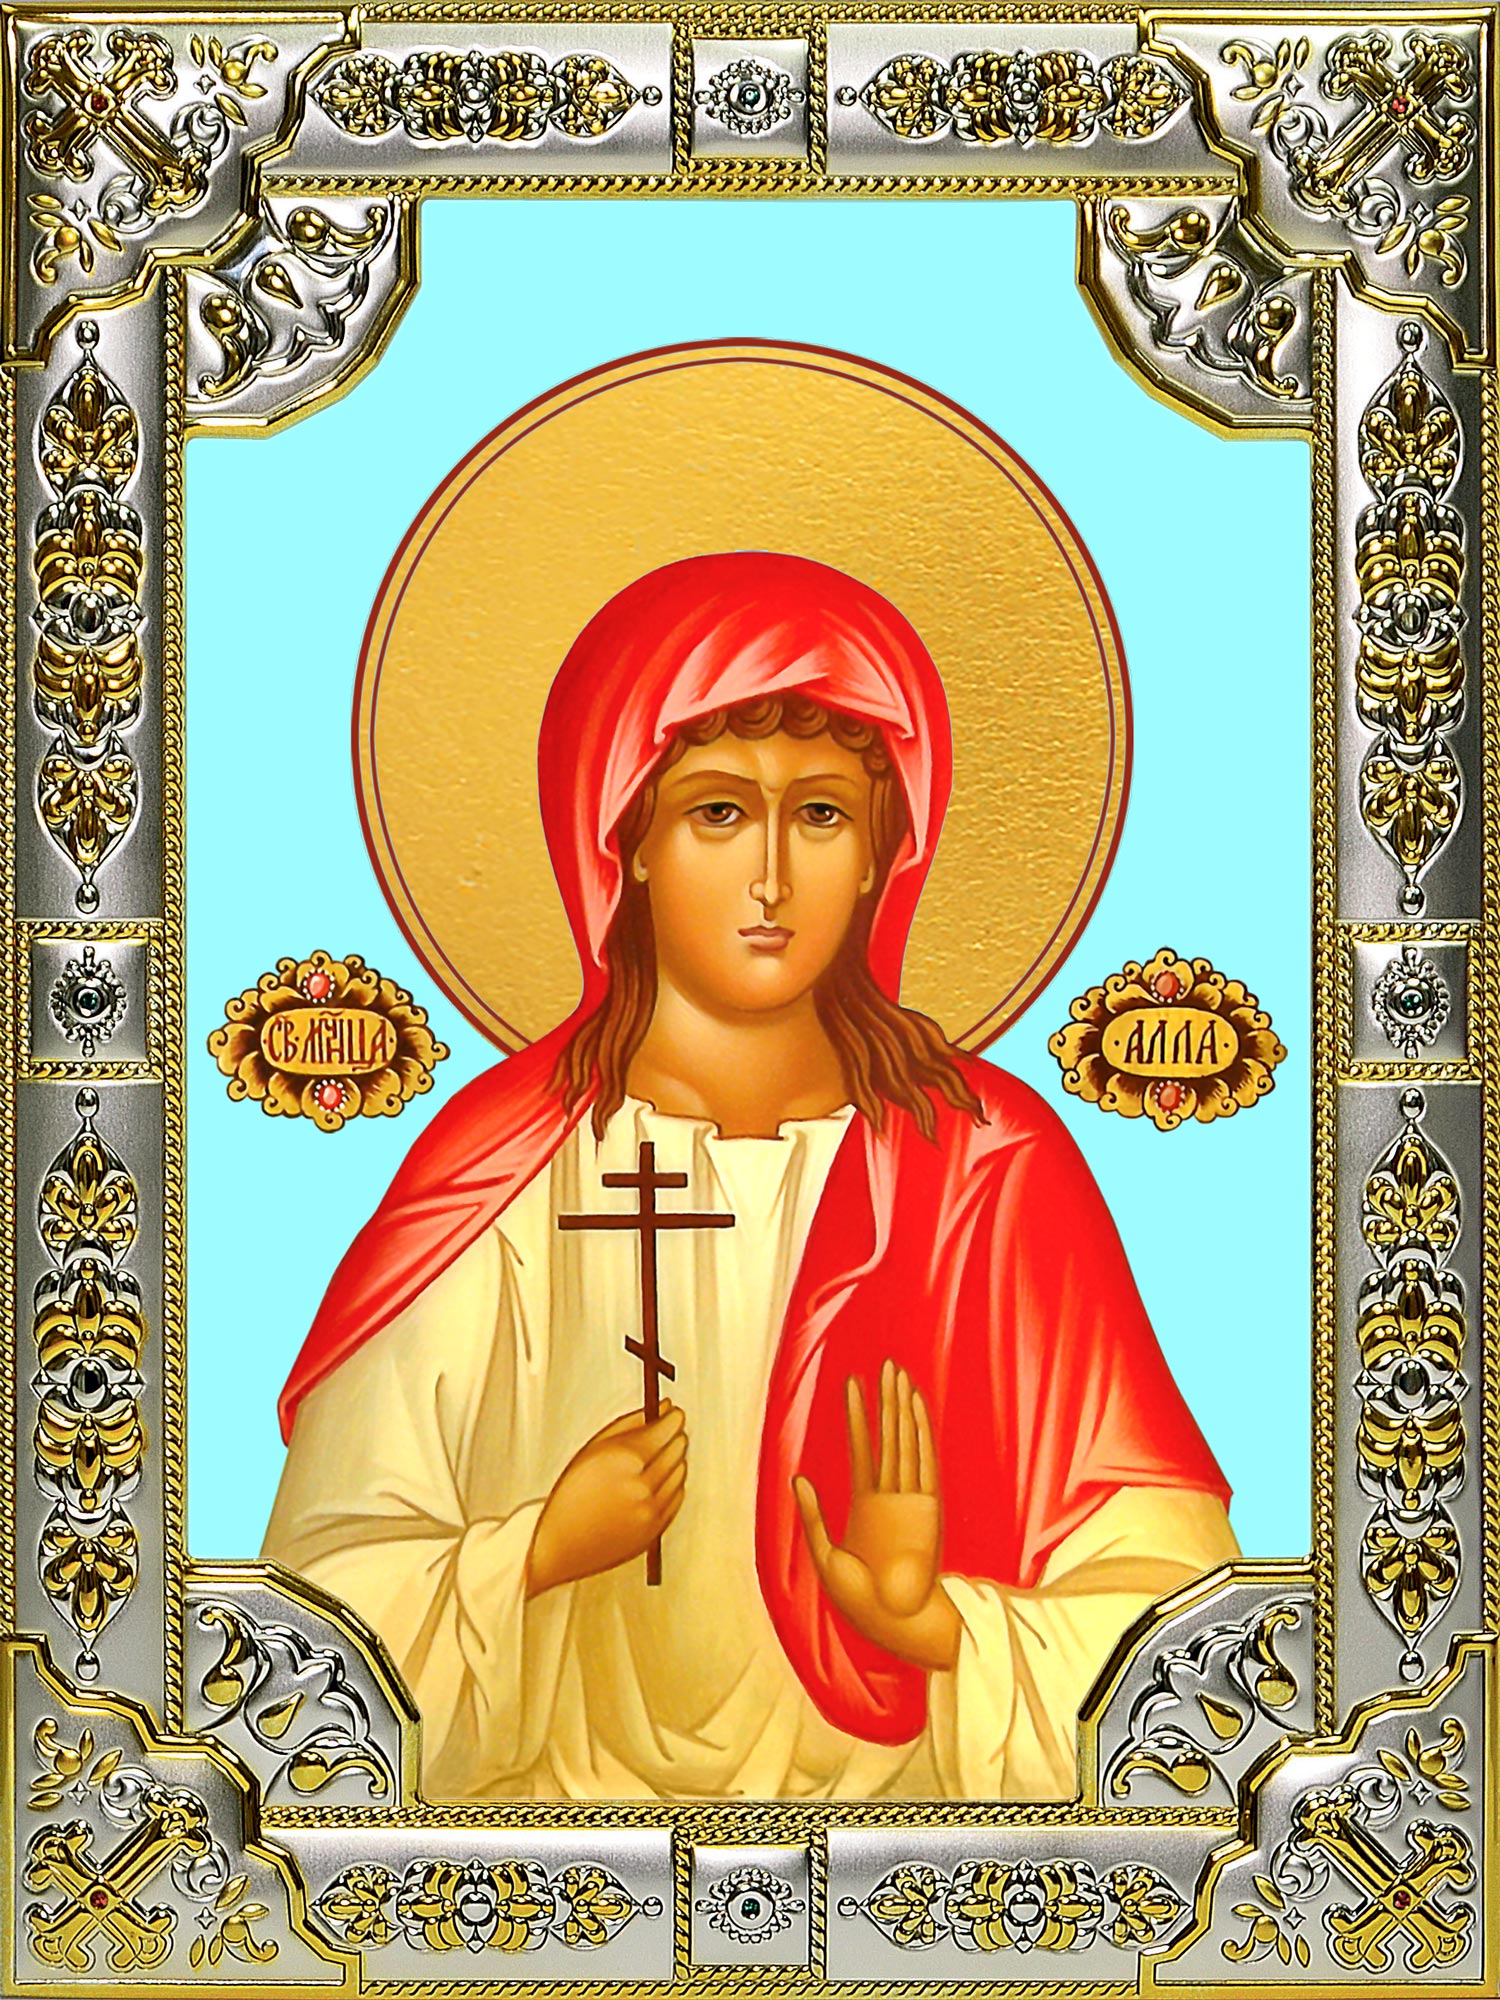 День святой аллы. Икона мученицы Аллы Готфской.